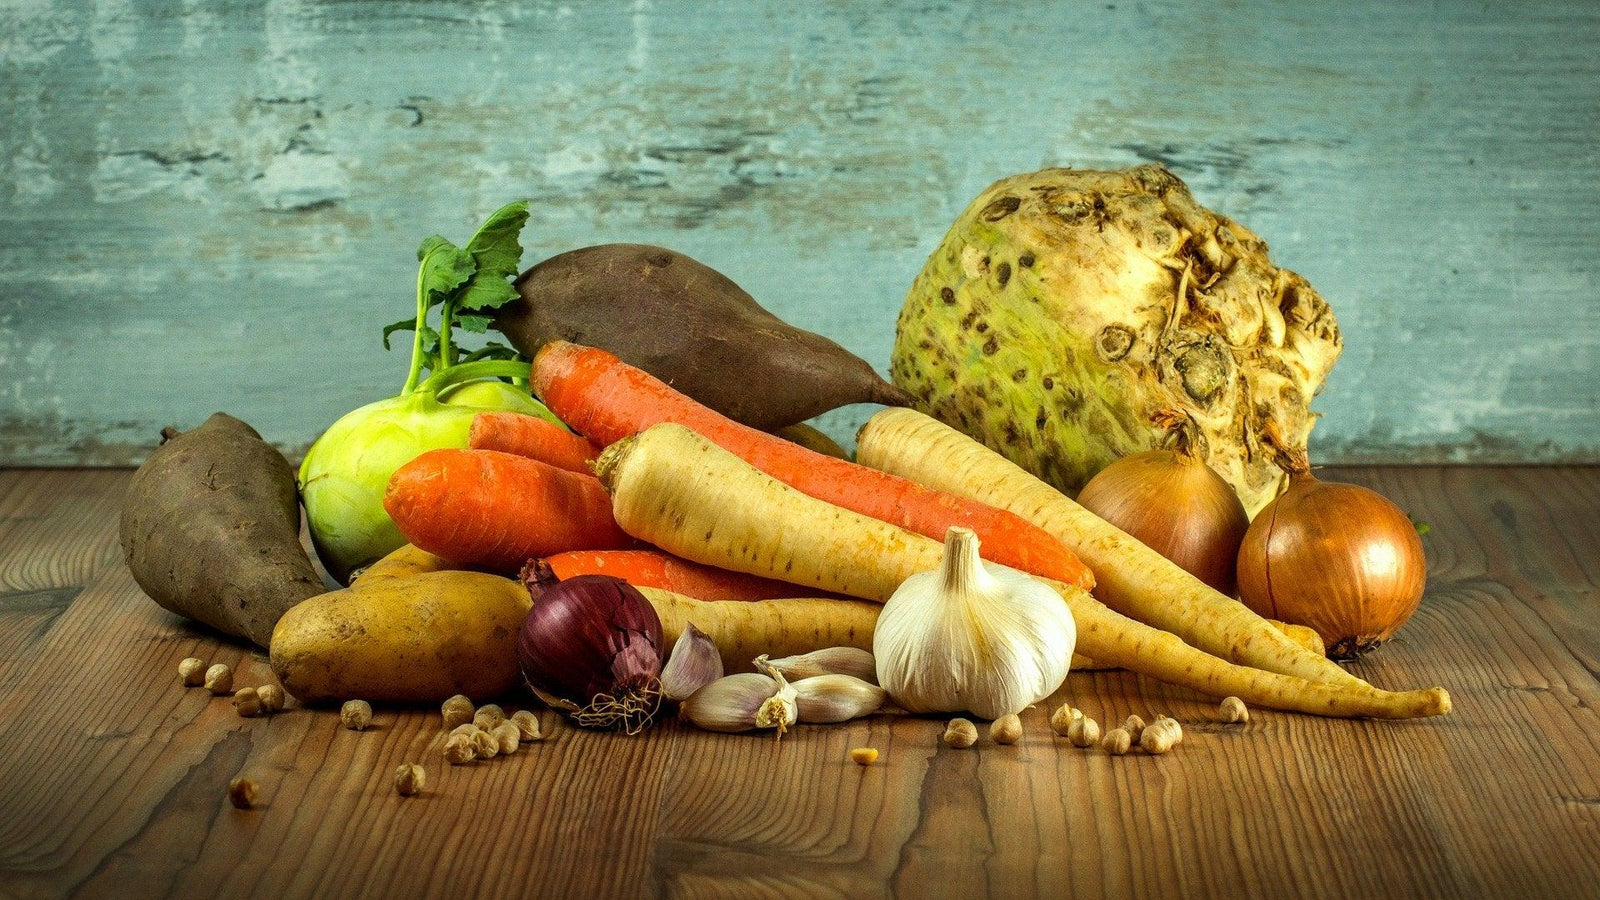 Éplucheur taille légumes - Décoration de légumes ! TOP PRIX